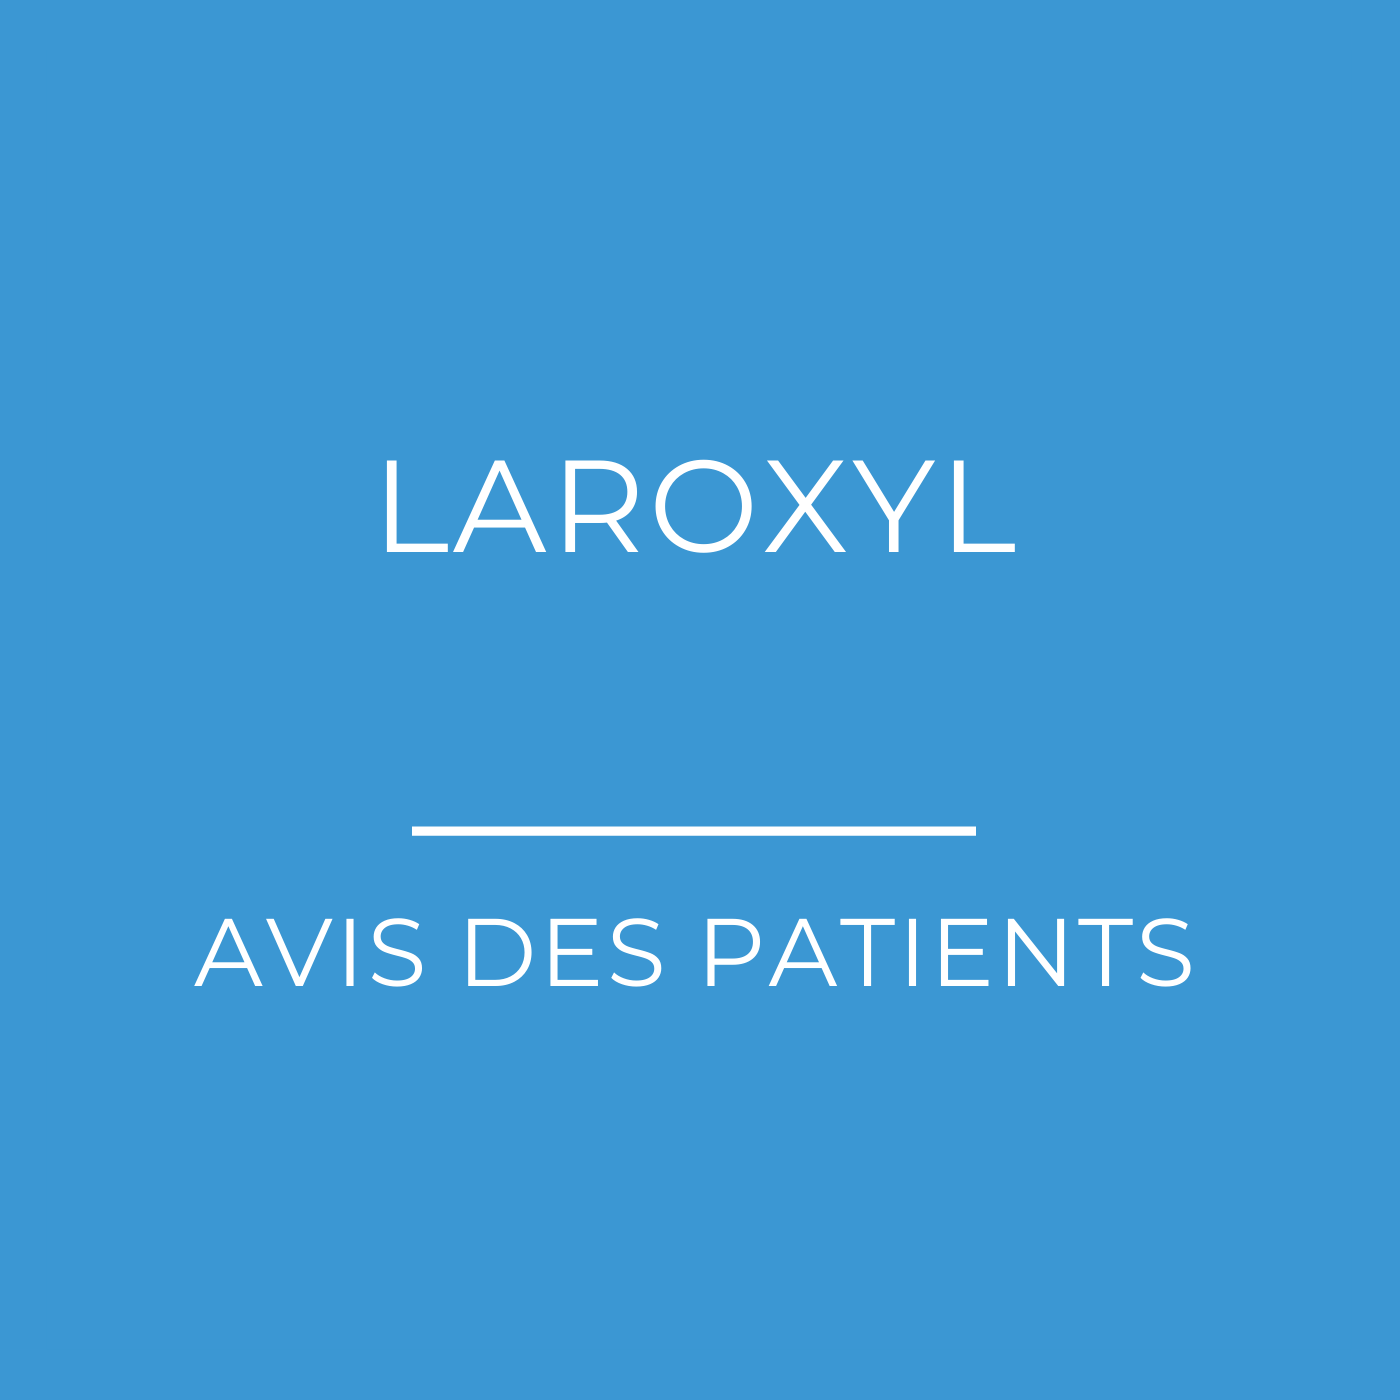 laroxyl 25 mg لماذا يستخدم